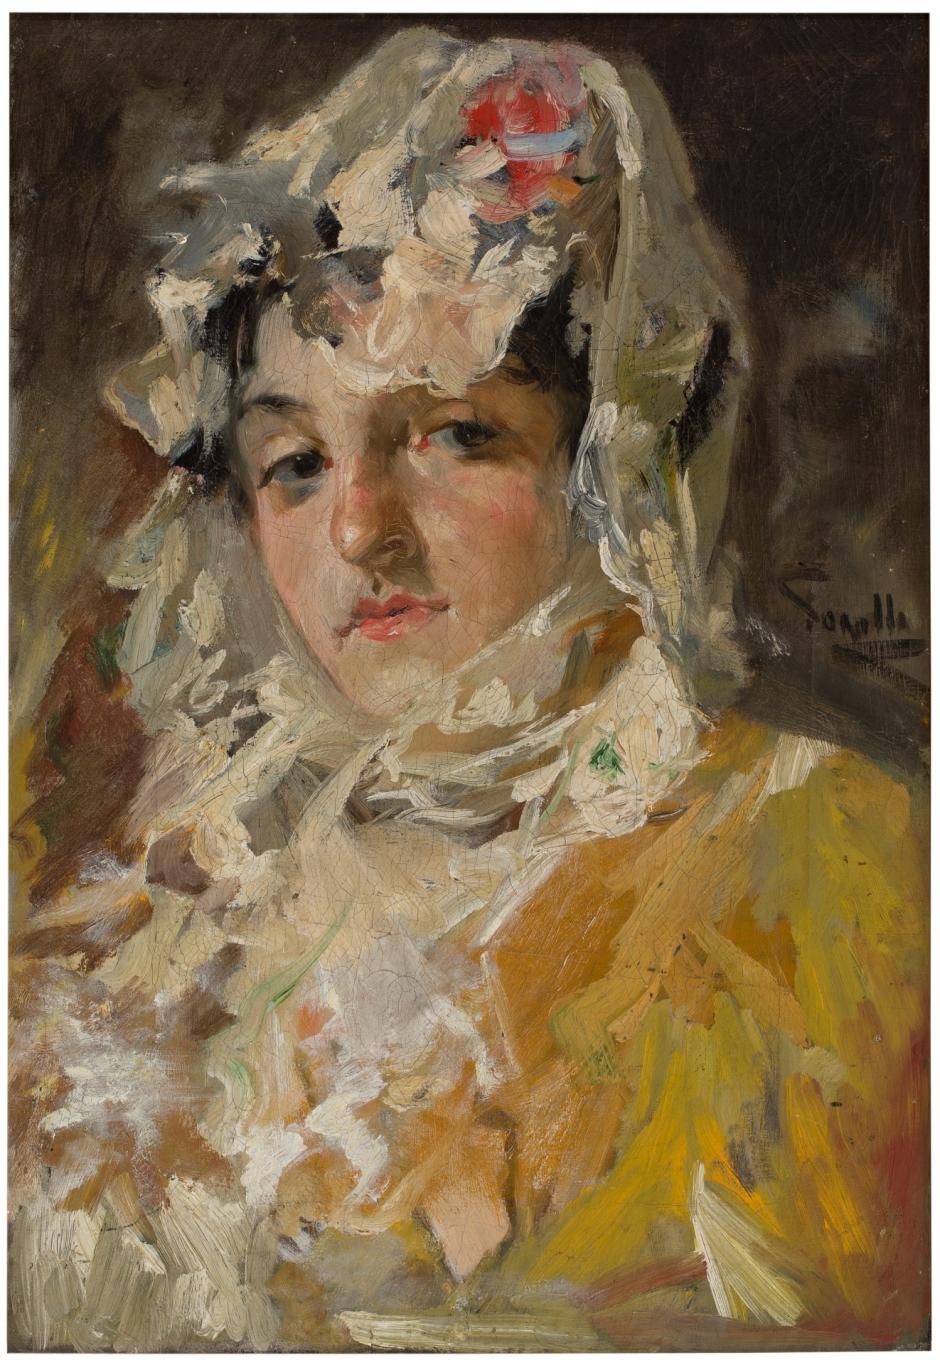 Cuadro 'Cabeza de mujer con mantilla blanca', de Joaquín Sorolla en el Museo del Prado